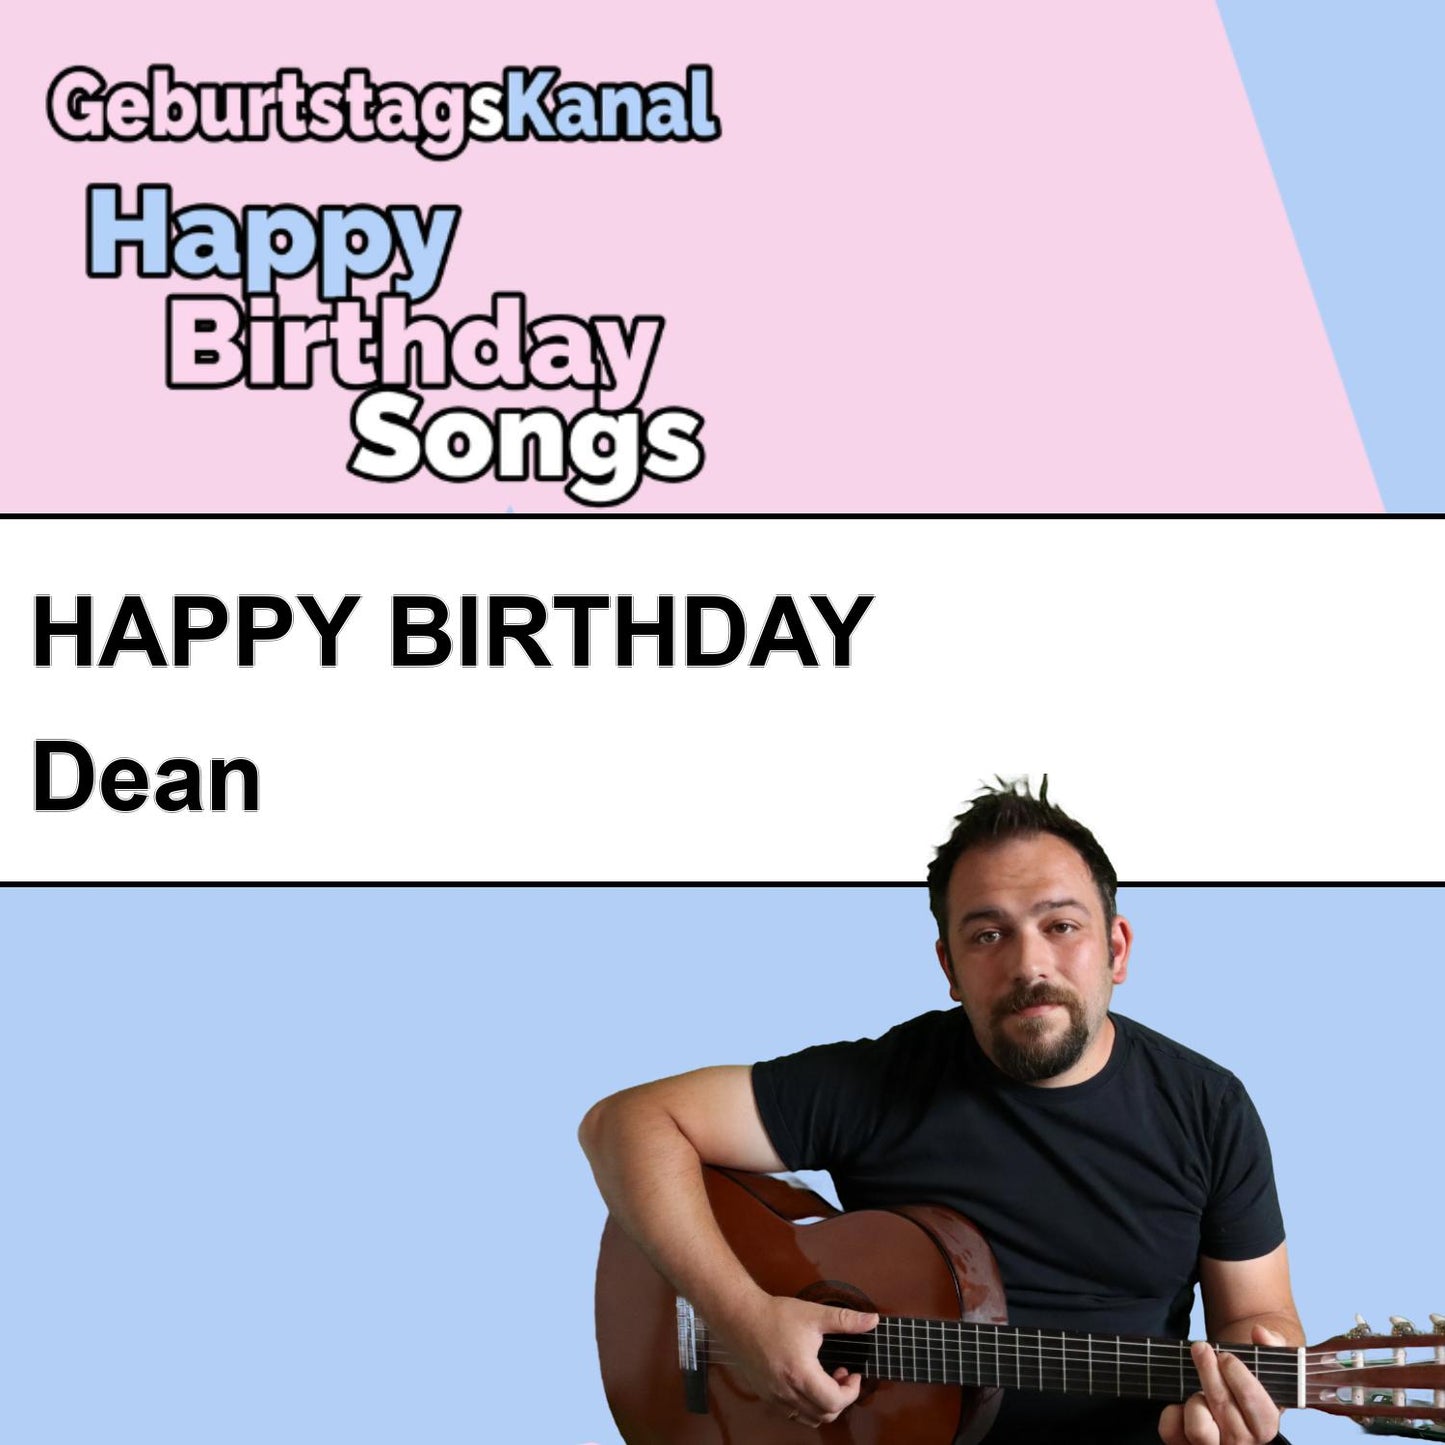 Produktbild Happy Birthday to you Dean mit Wunschgrußbotschaft